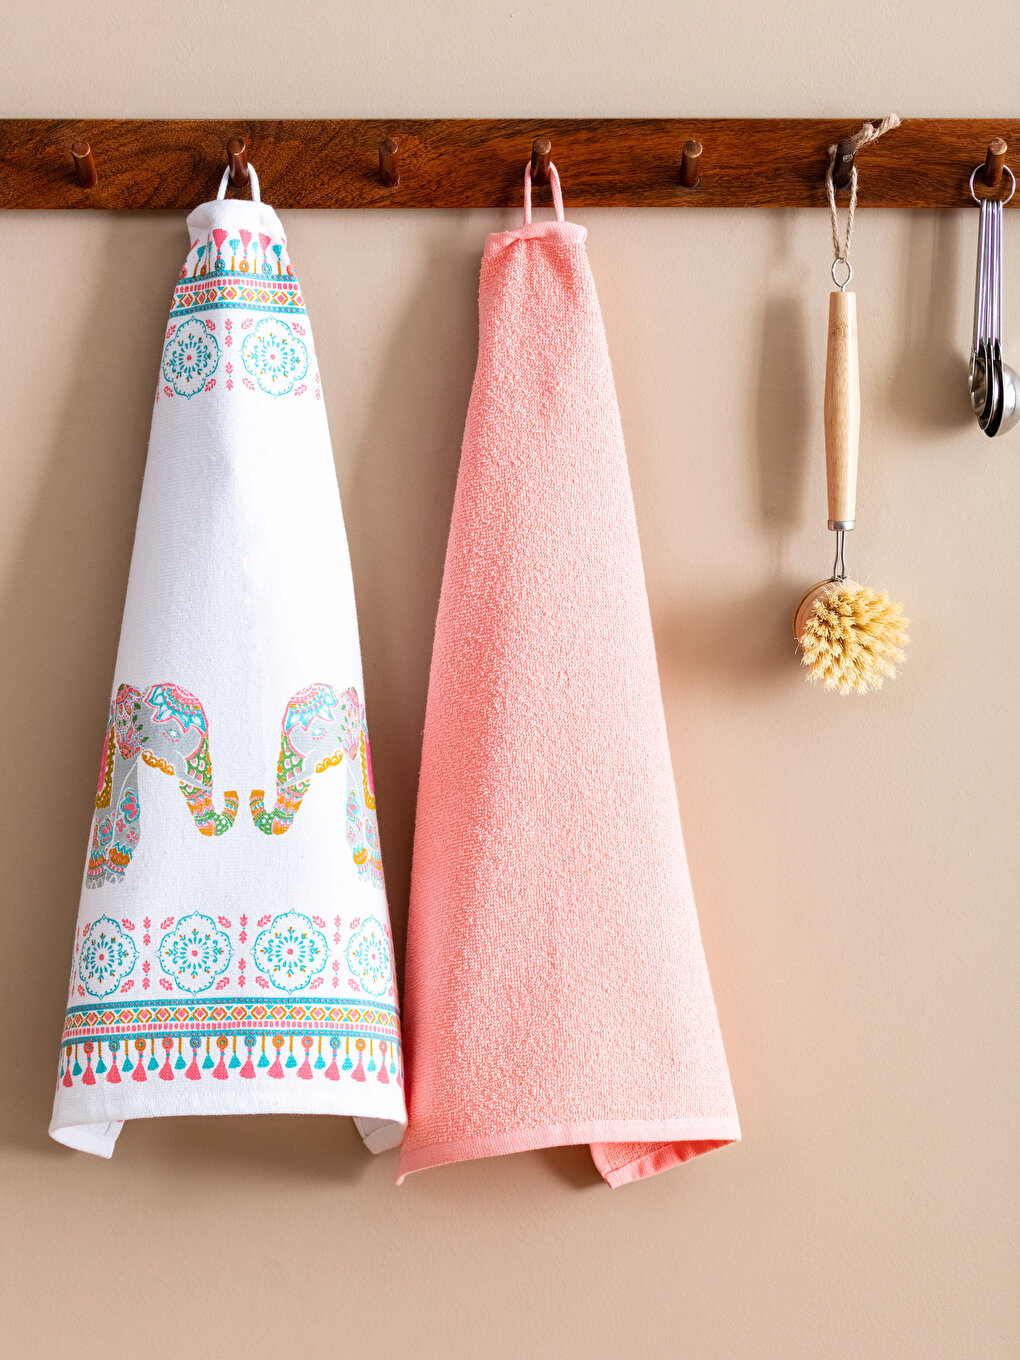 Drying Towel, DIY Detail